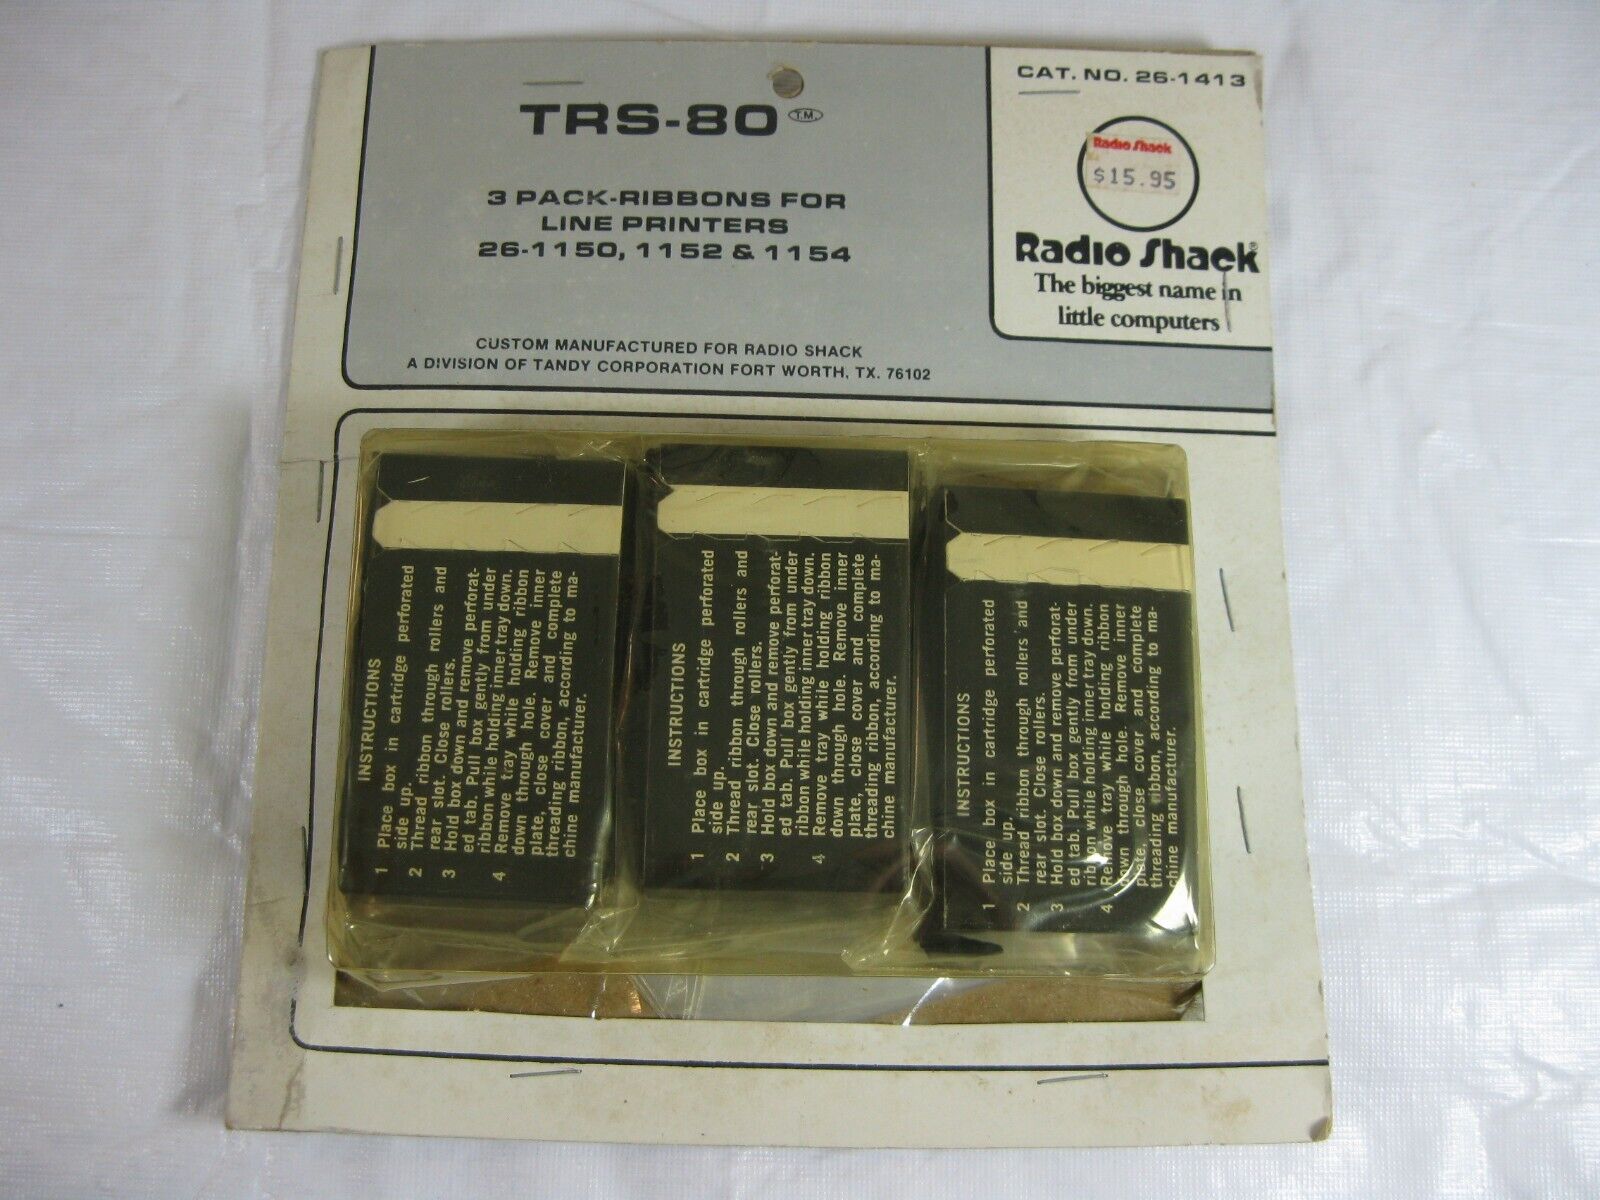 VTG RARE RADIO SHACK TRS-80 Line Printer 3-PACK RIBBONS 26-1150,1152,1154, NOS